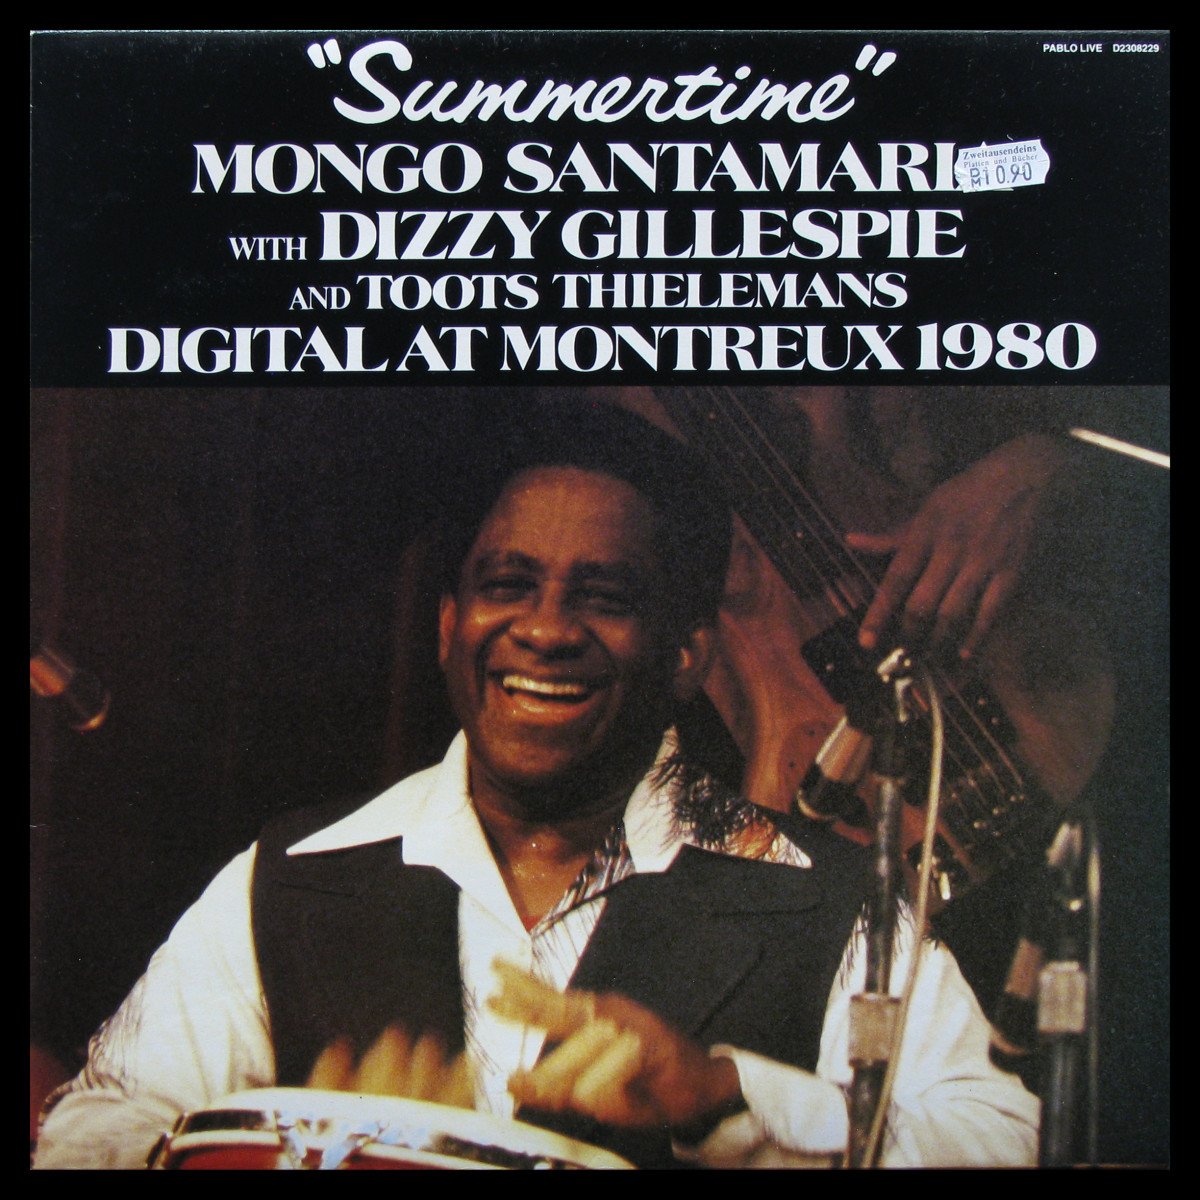 LP Mongo Santamaria / Dizzy Gillespie / Toots Thielemans — Summertime - Digital At Montreux 1980 фото